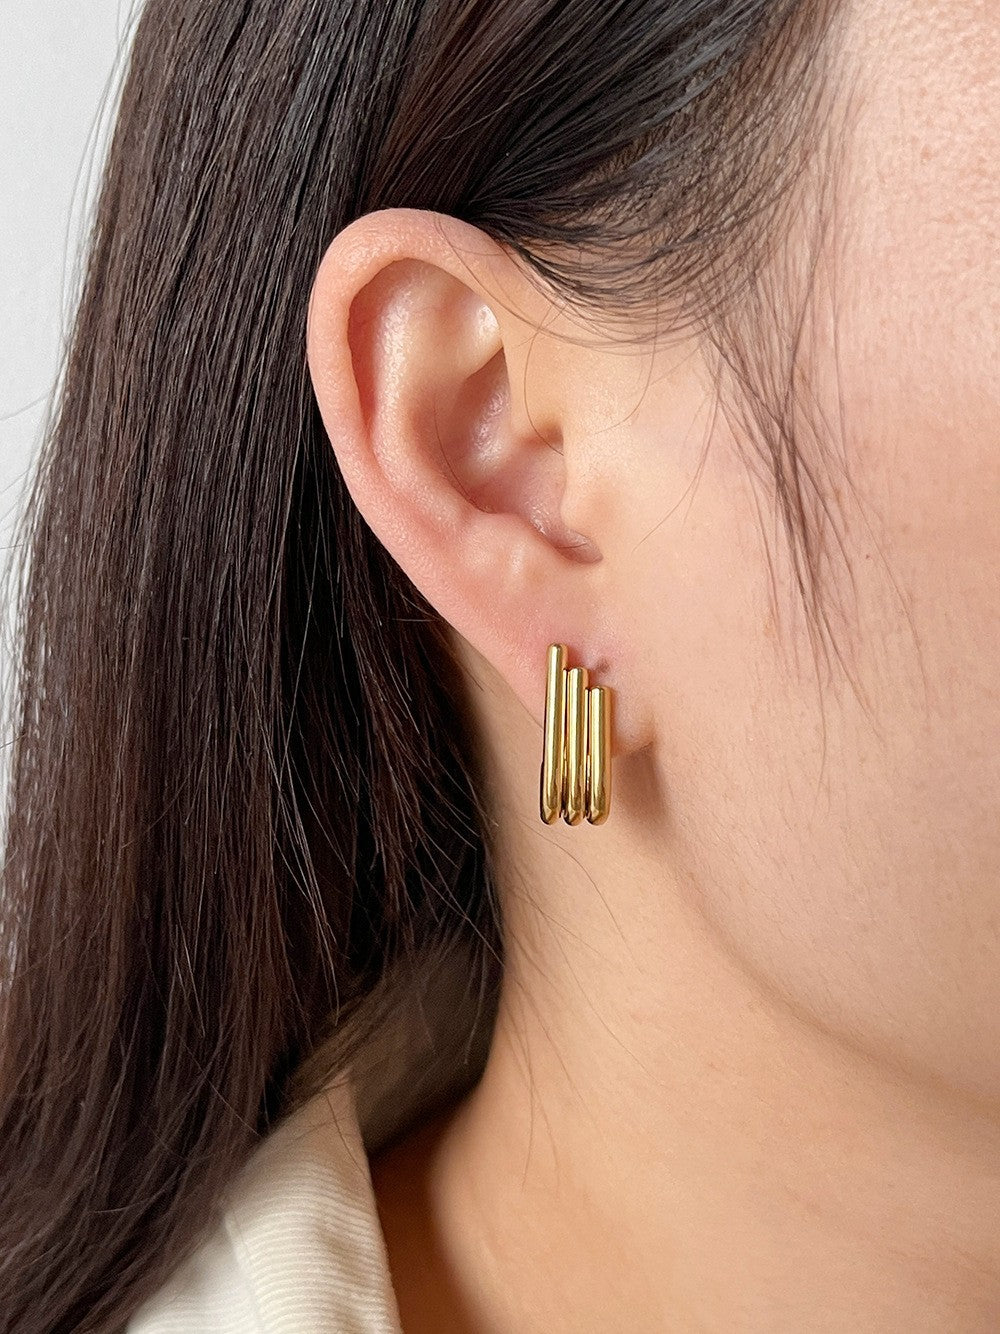 Little Wing Stainless Steel Earrings For Women